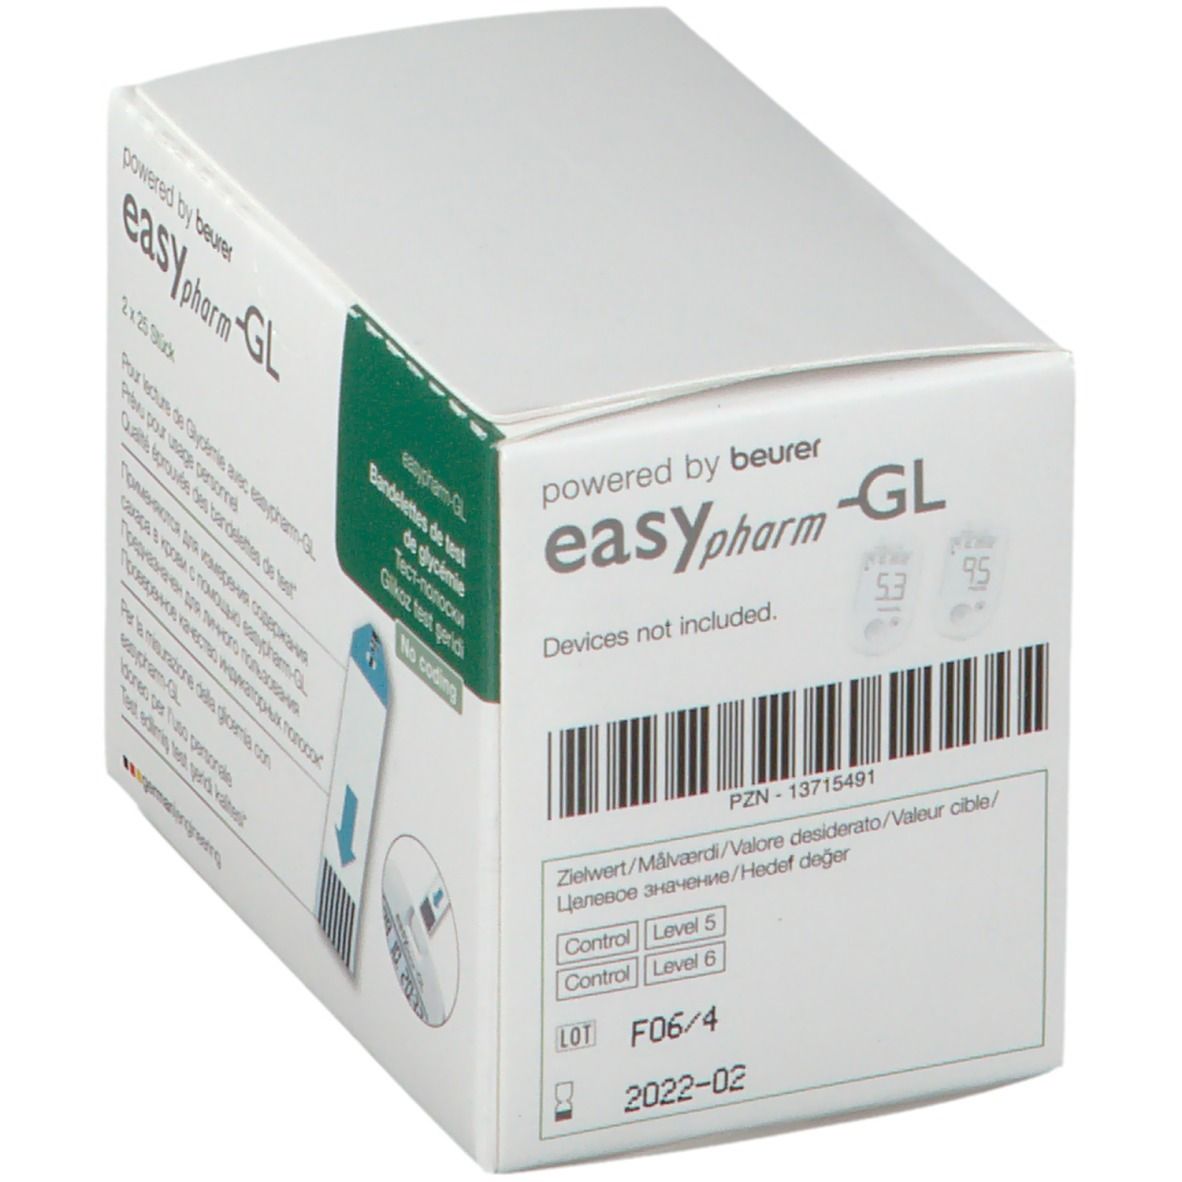 easypharm-GL Blutzucker-Teststreifen